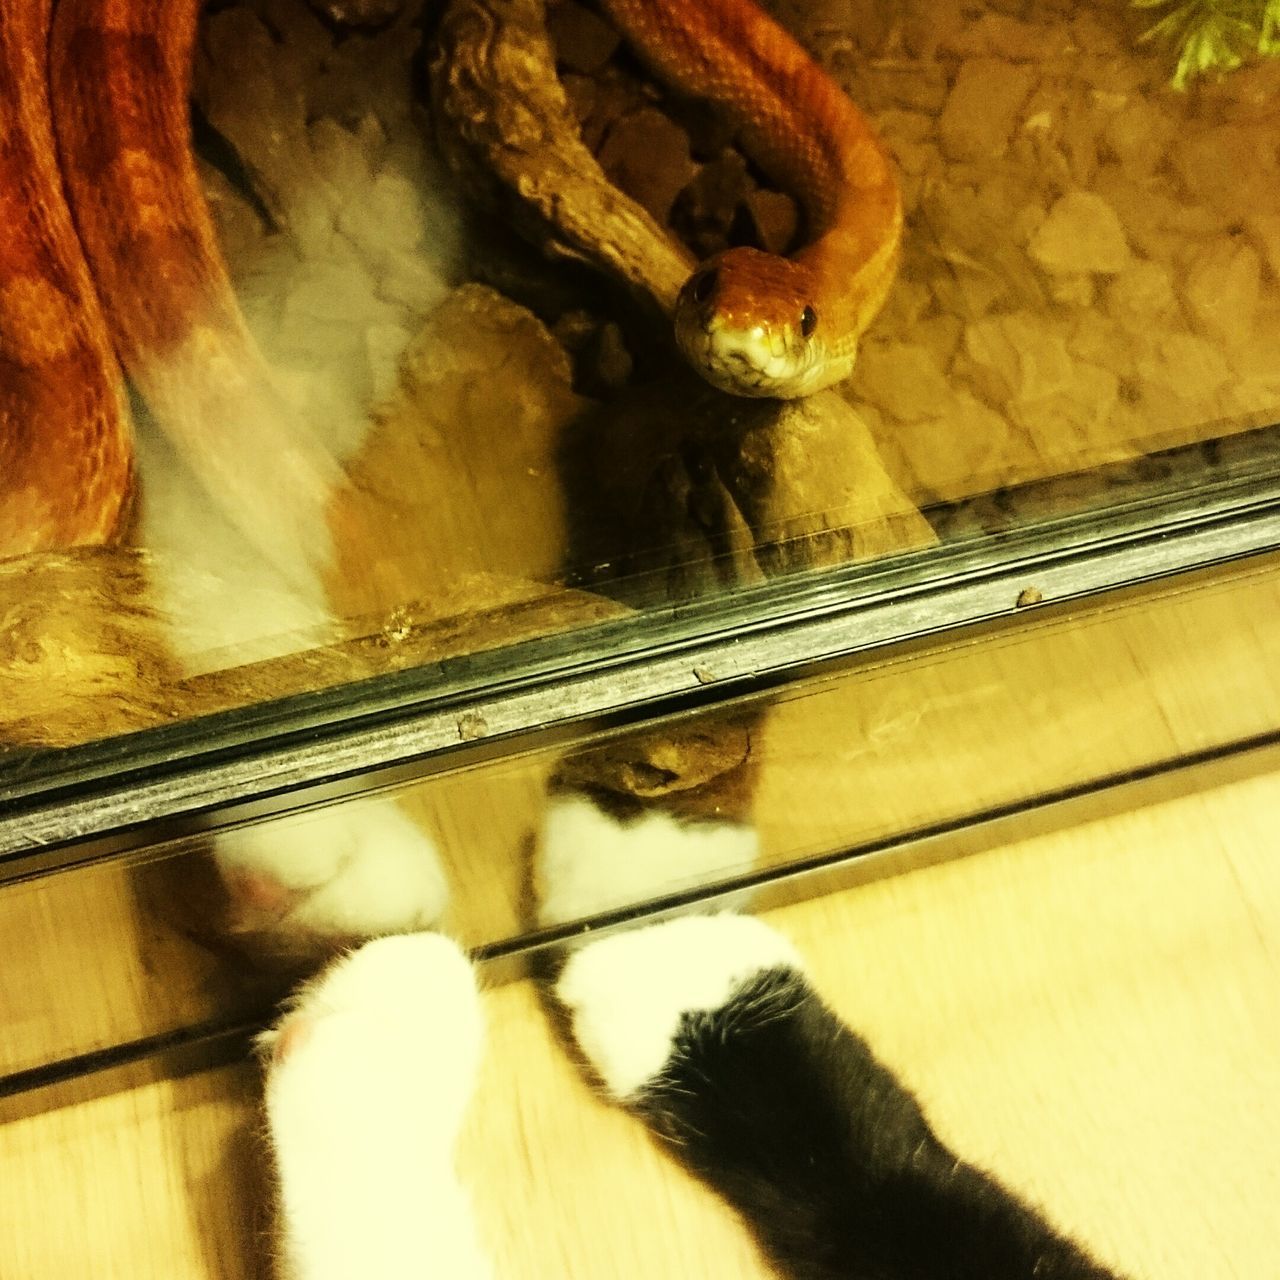 Snake meets cat